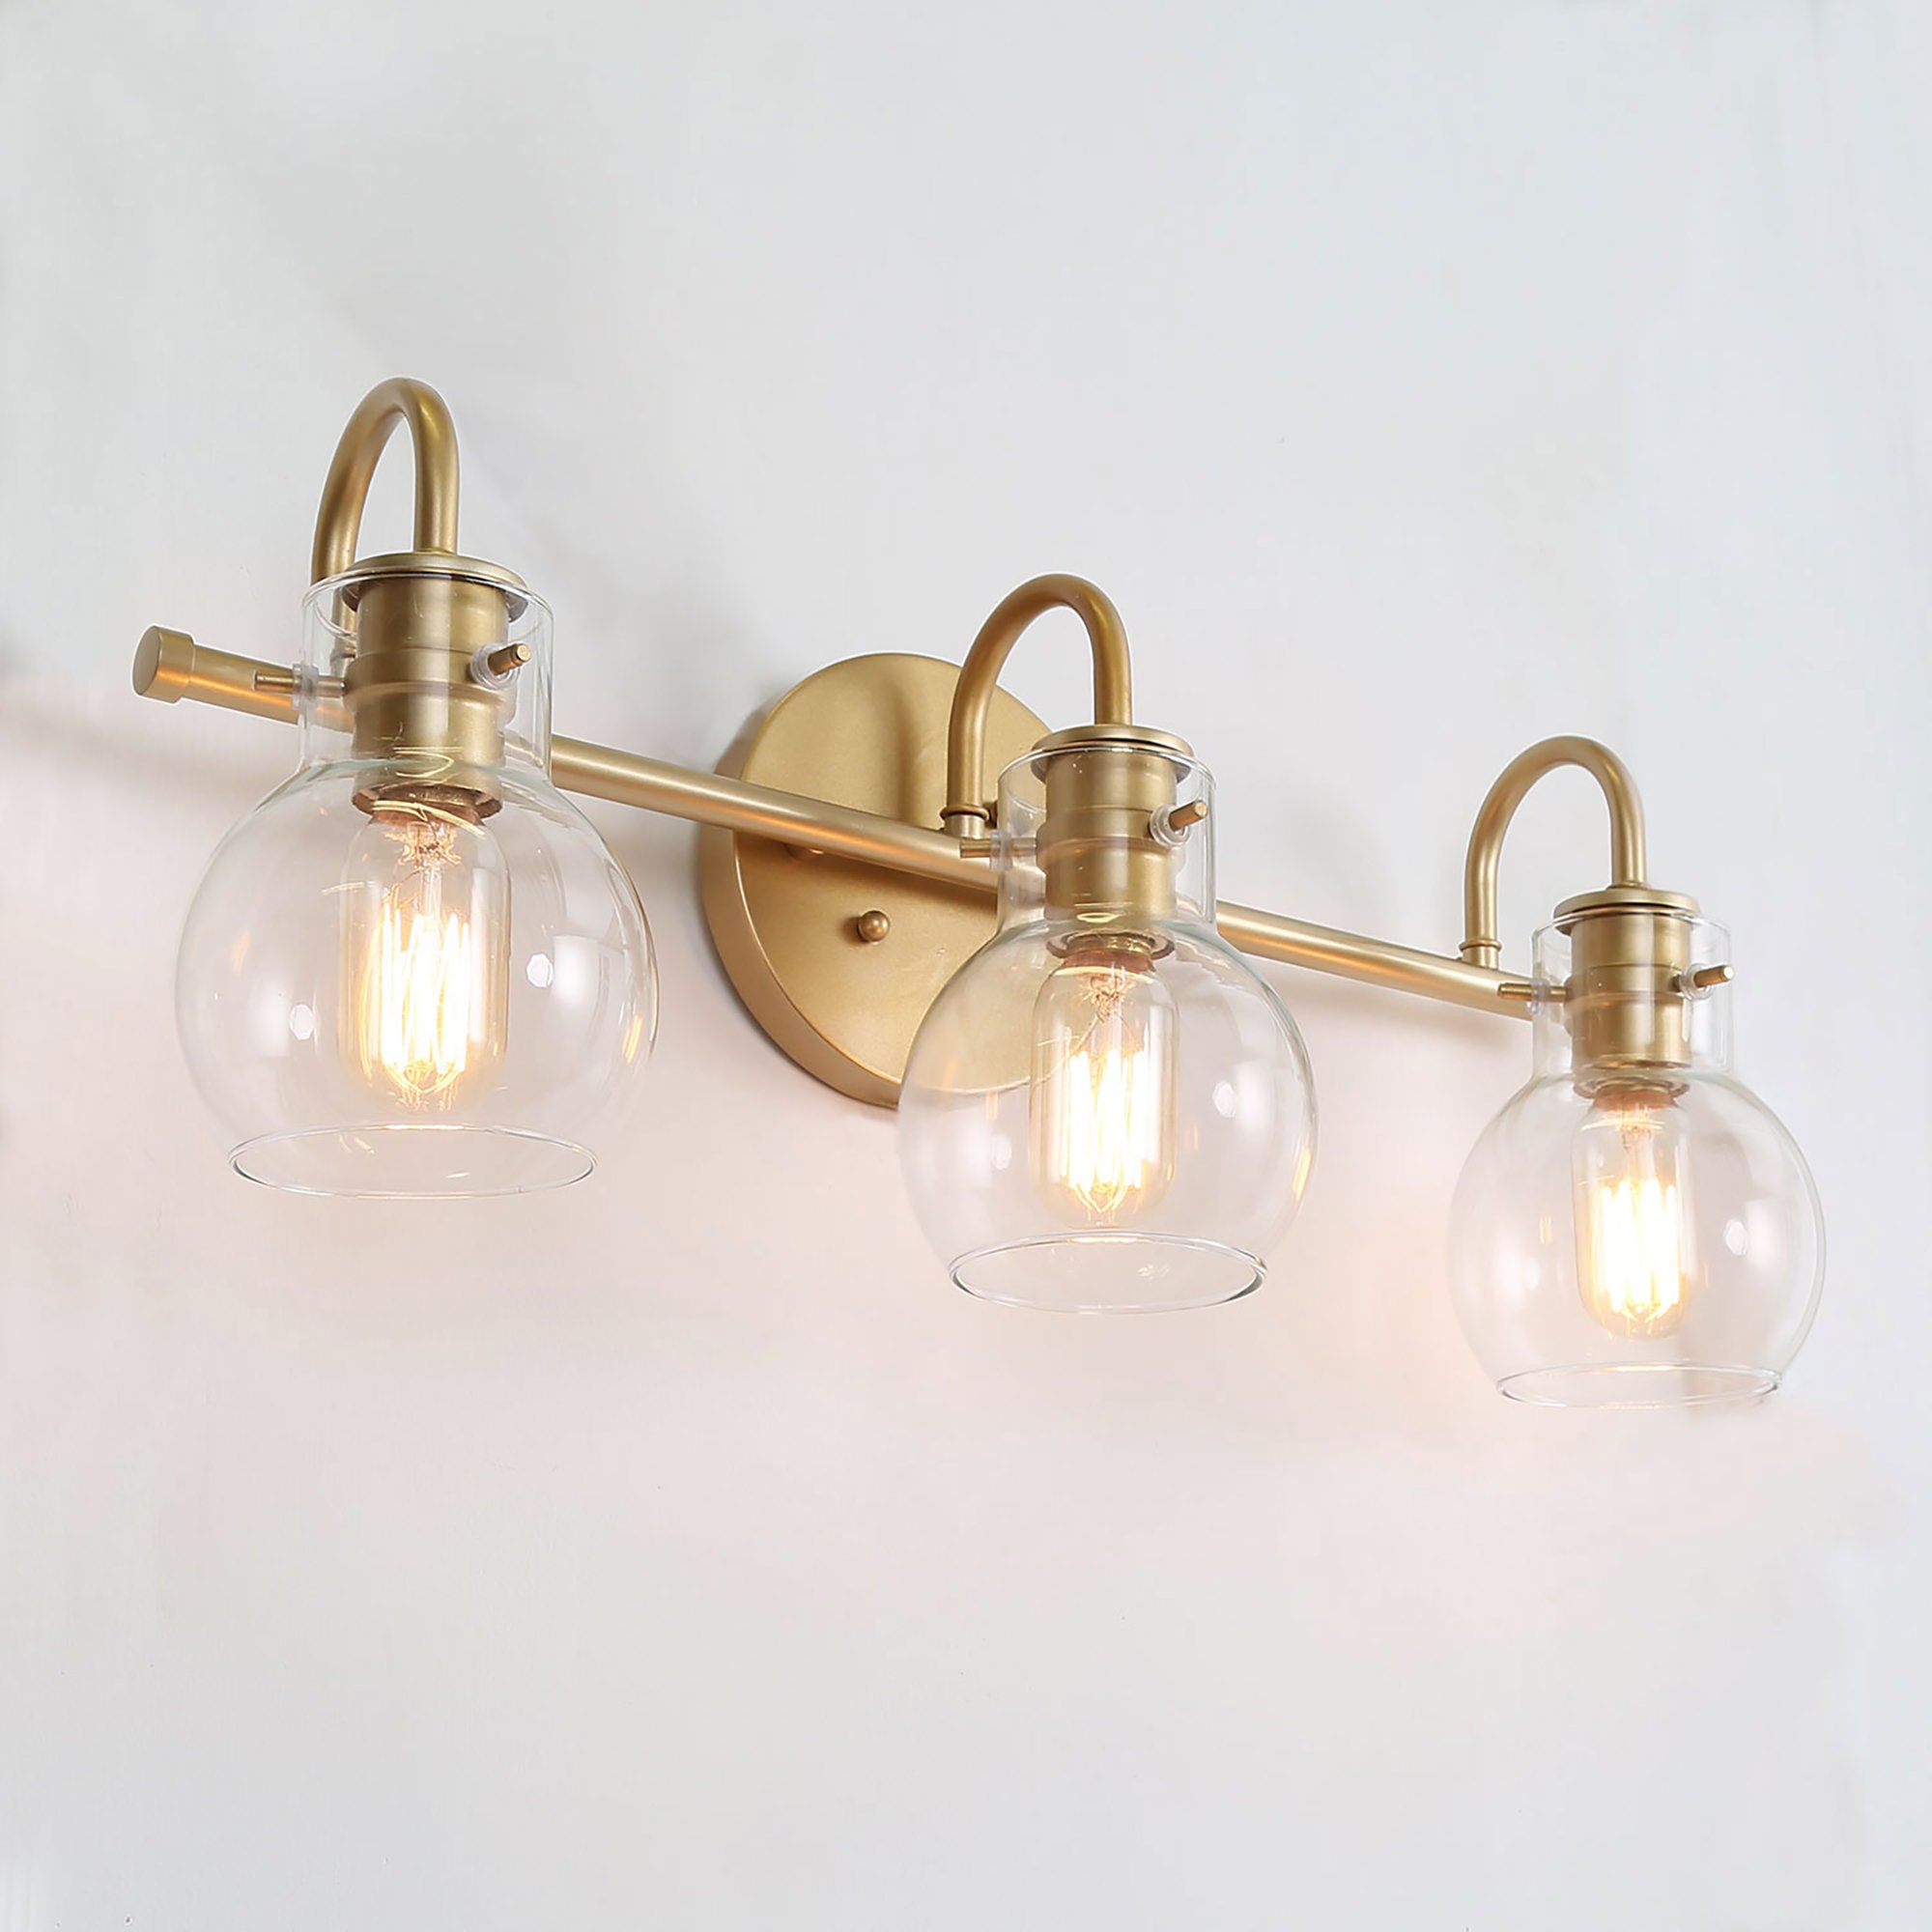 Brass Vanity Light Bathroom Lights Bathroom Wall Sconce | Etsy